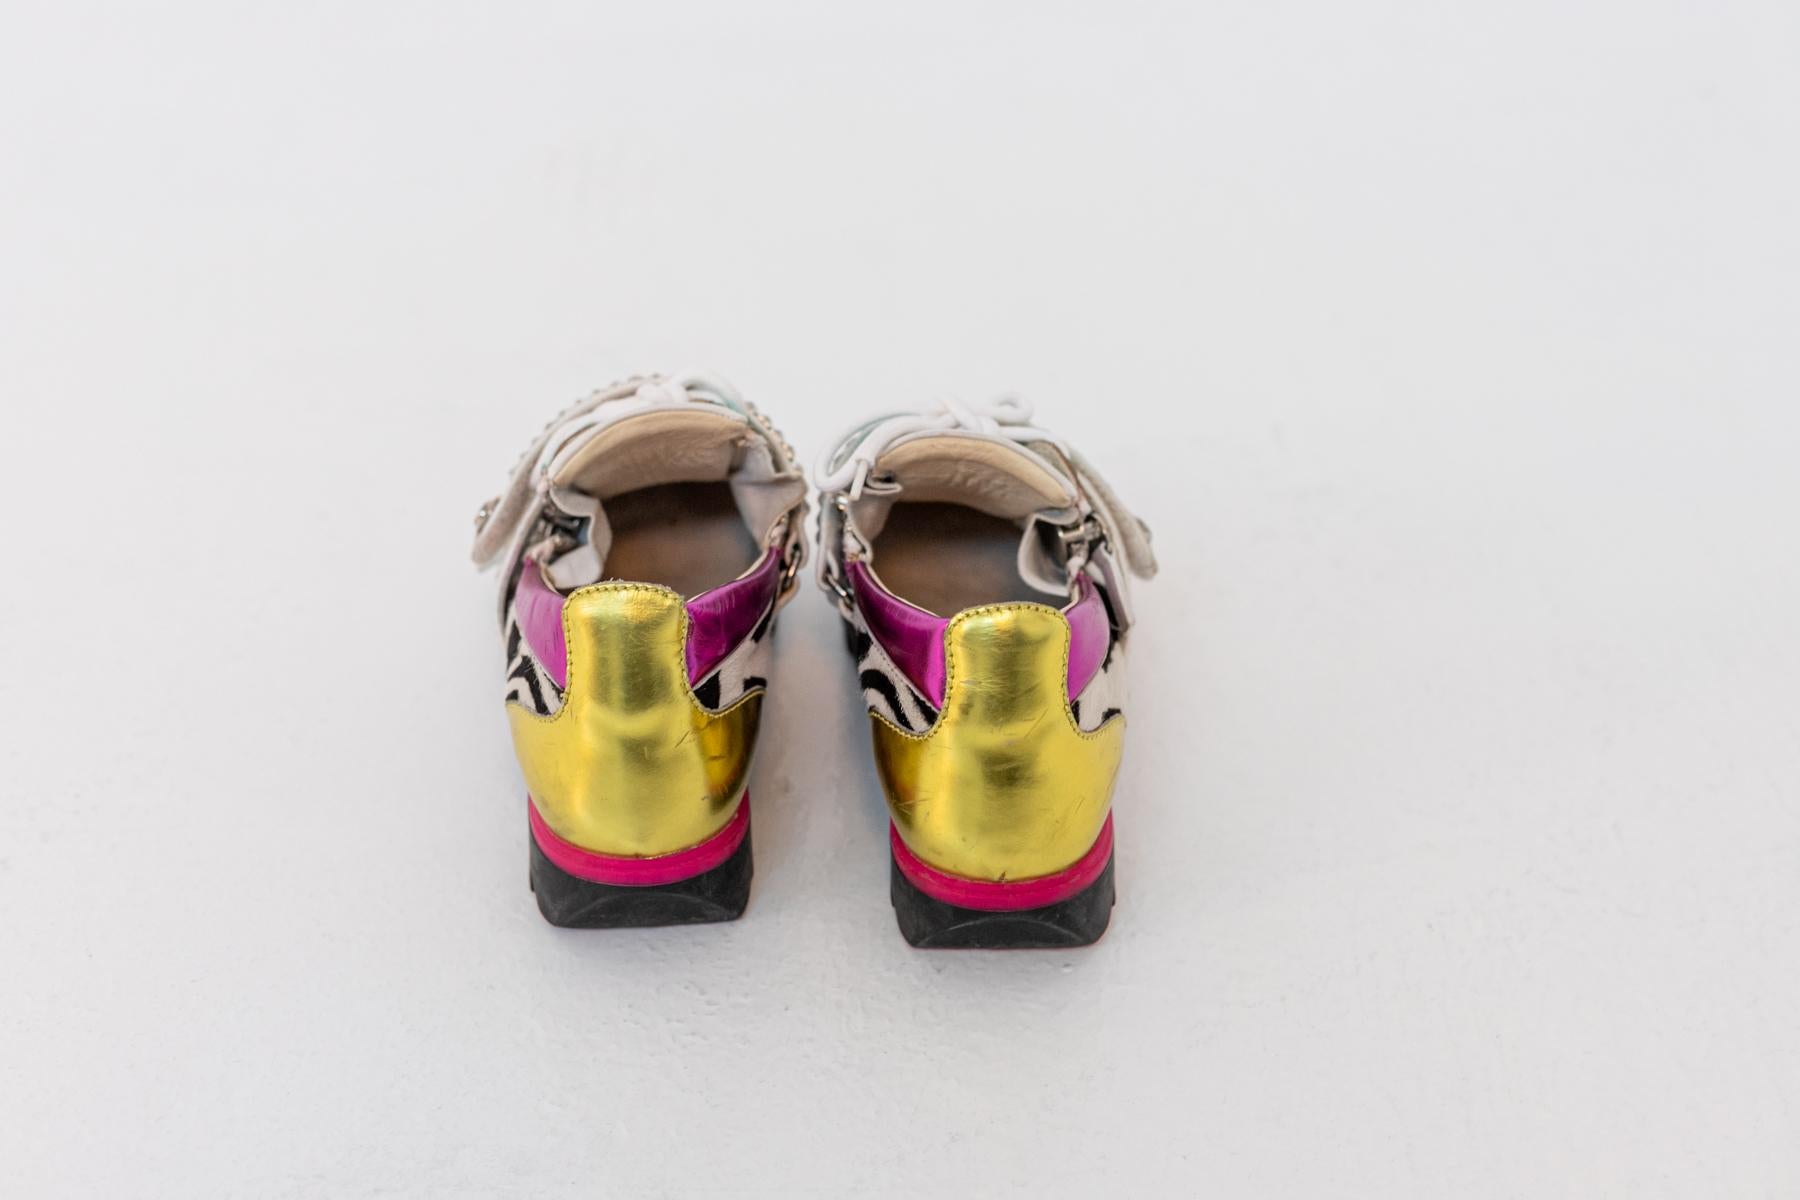 Unwiderstehliches Paar Special Edition Sneakers von Giuseppe Zanotti Design. die schönen Schuhe sind in der Originalverpackung und wurden nur ein paar Mal getragen. innen weiches weißes Leder.  Die Sneaker wurden aus echtem Leder in verschiedenen